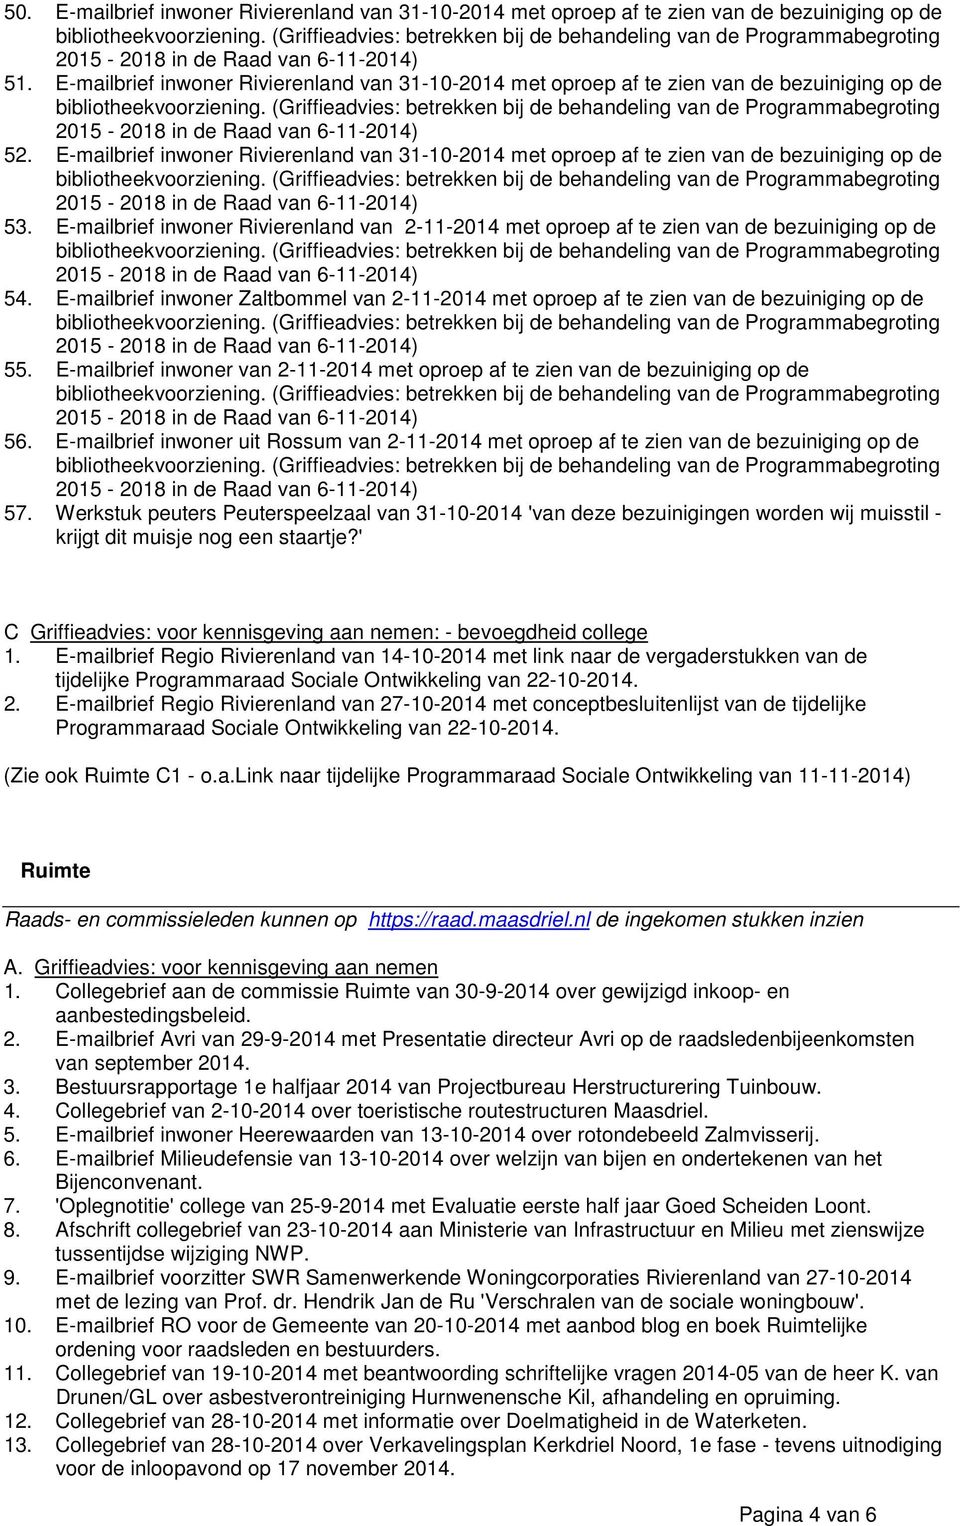 E-mailbrief inwoner Rivierenland van 2-11-2014 met oproep af te zien van de bezuiniging op de 54. E-mailbrief inwoner Zaltbommel van 2-11-2014 met oproep af te zien van de bezuiniging op de 55.